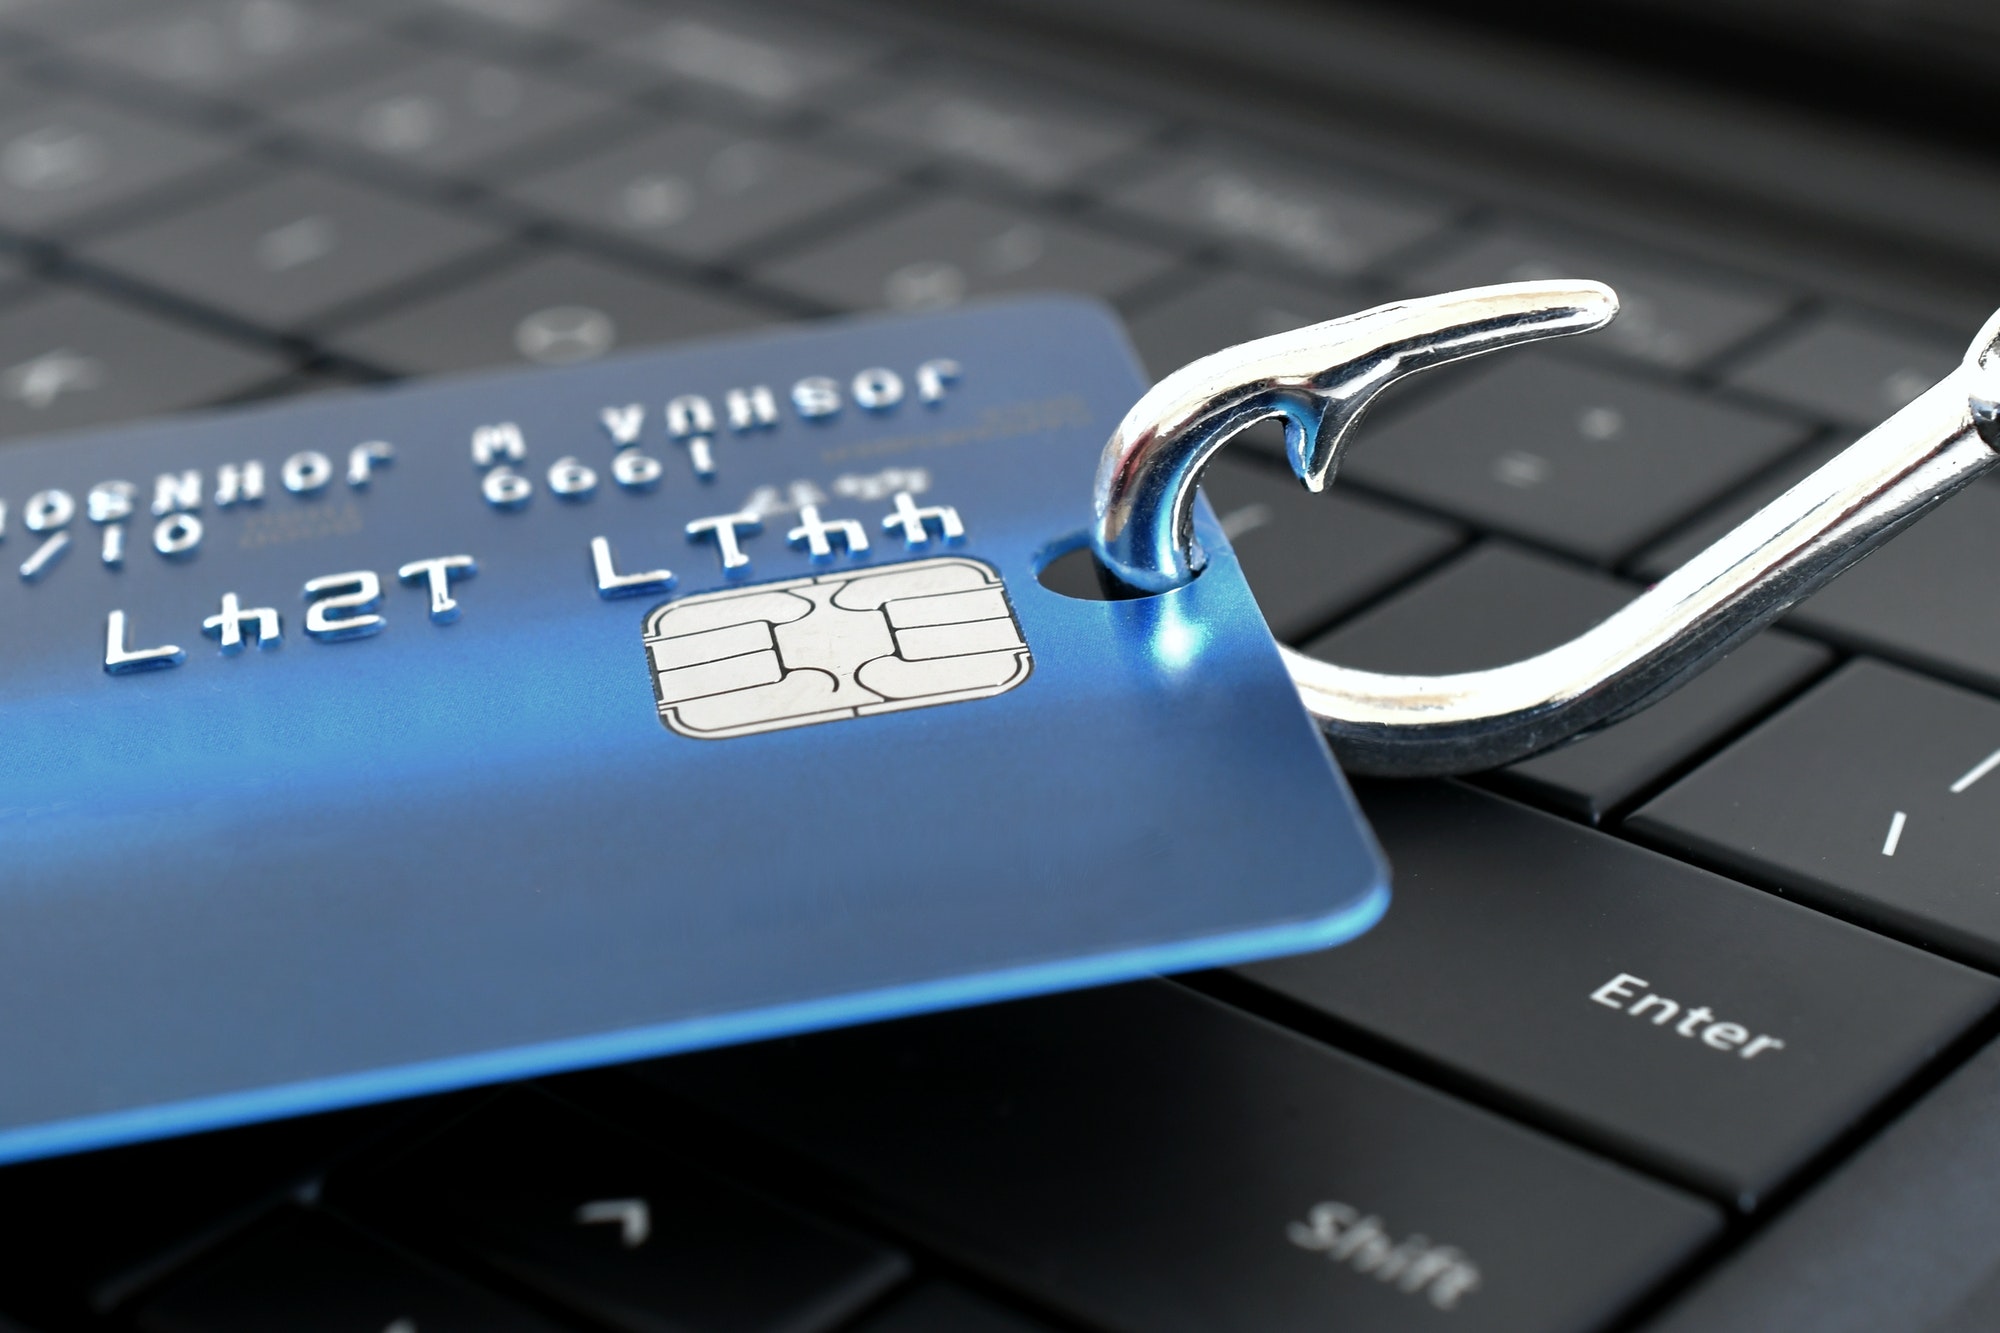 Protégez-vous des cybercriminels : Comment éviter les arnaques de phishing et autres fraudes